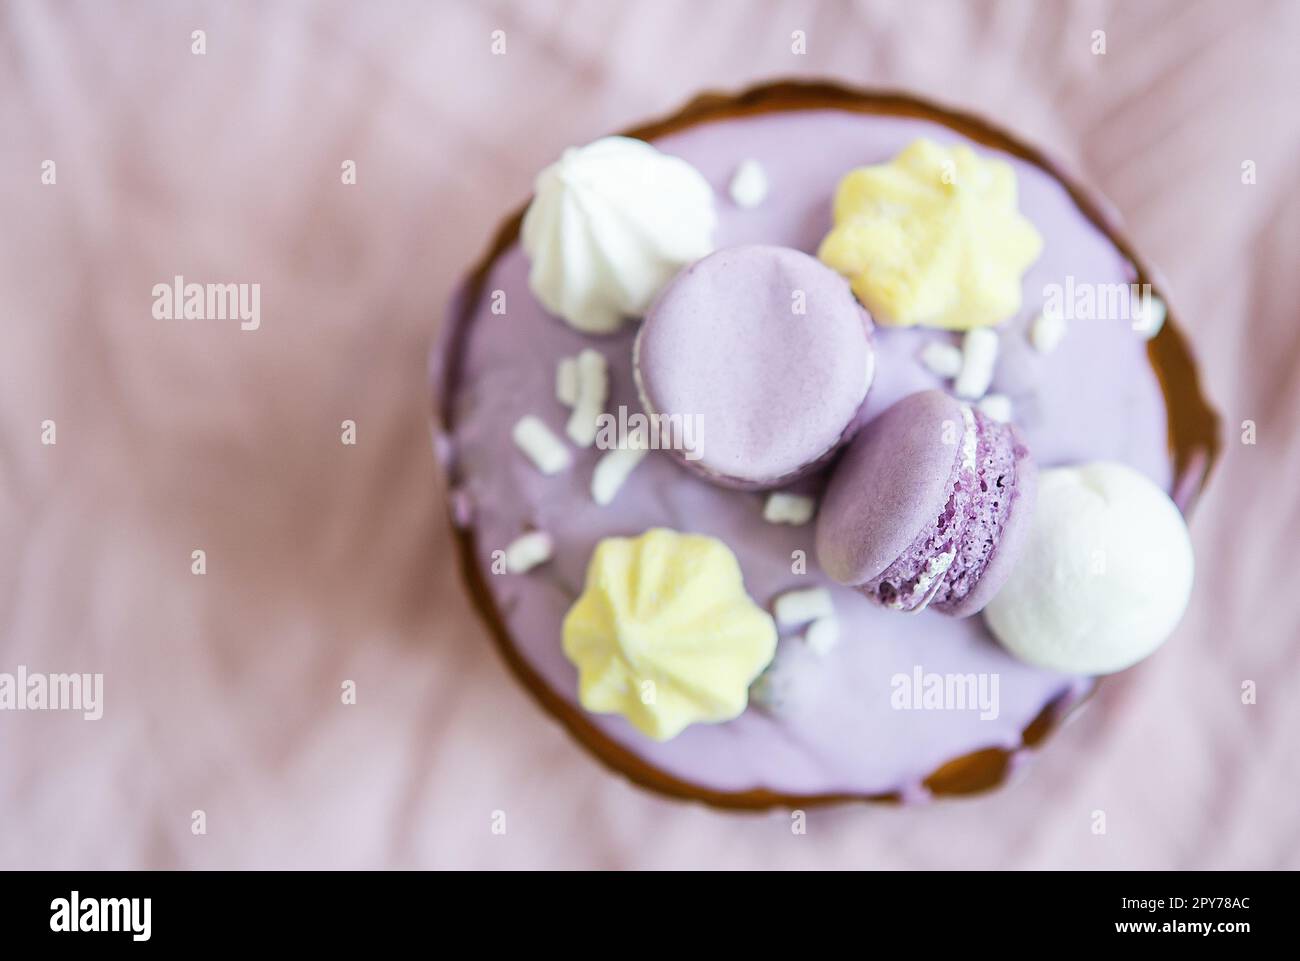 Ein traditioneller paska mit weißer Schweizer Schokolade und Baiser steht auf einer lavendelfarbenen Tischdecke. Osterurlaub, Draufsicht. Platz für die Beschriftung. Stockfoto